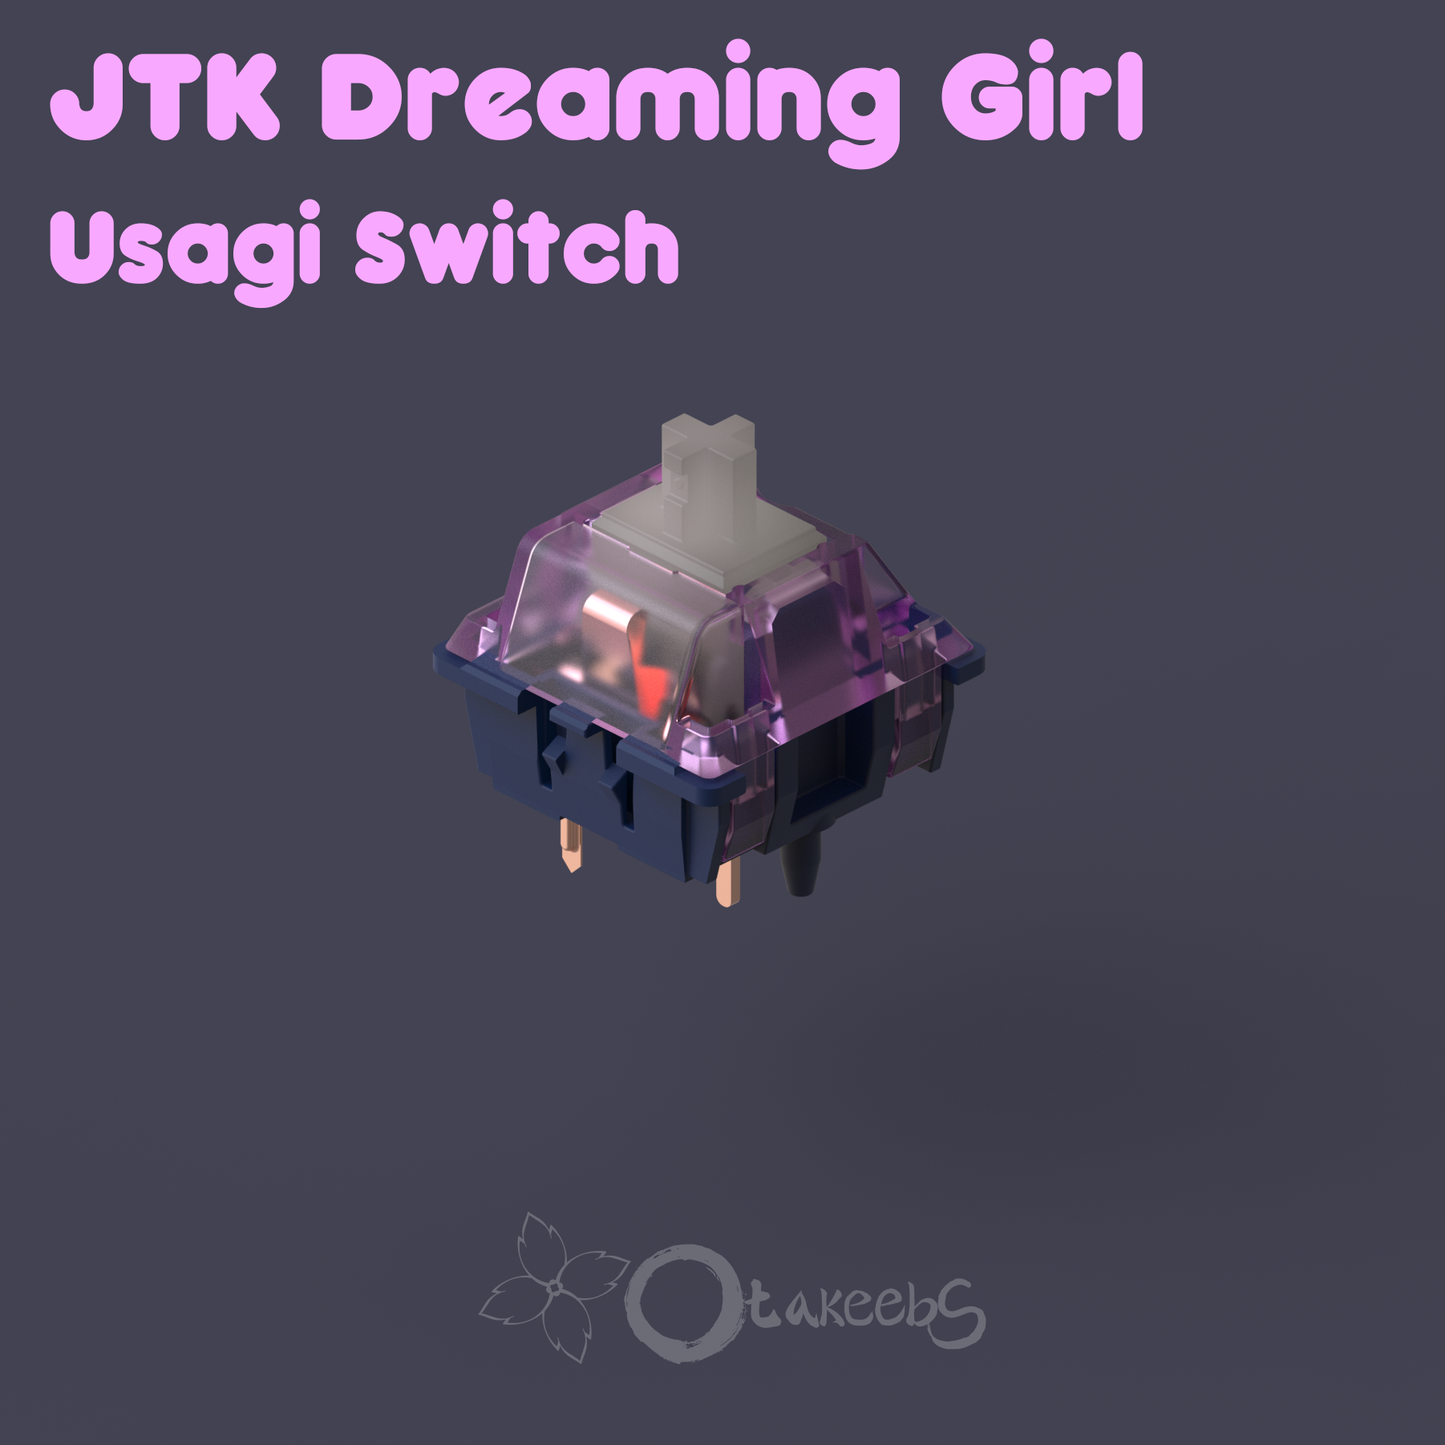 [GroupBuy] JTK Dreaming Girl Usagi switch